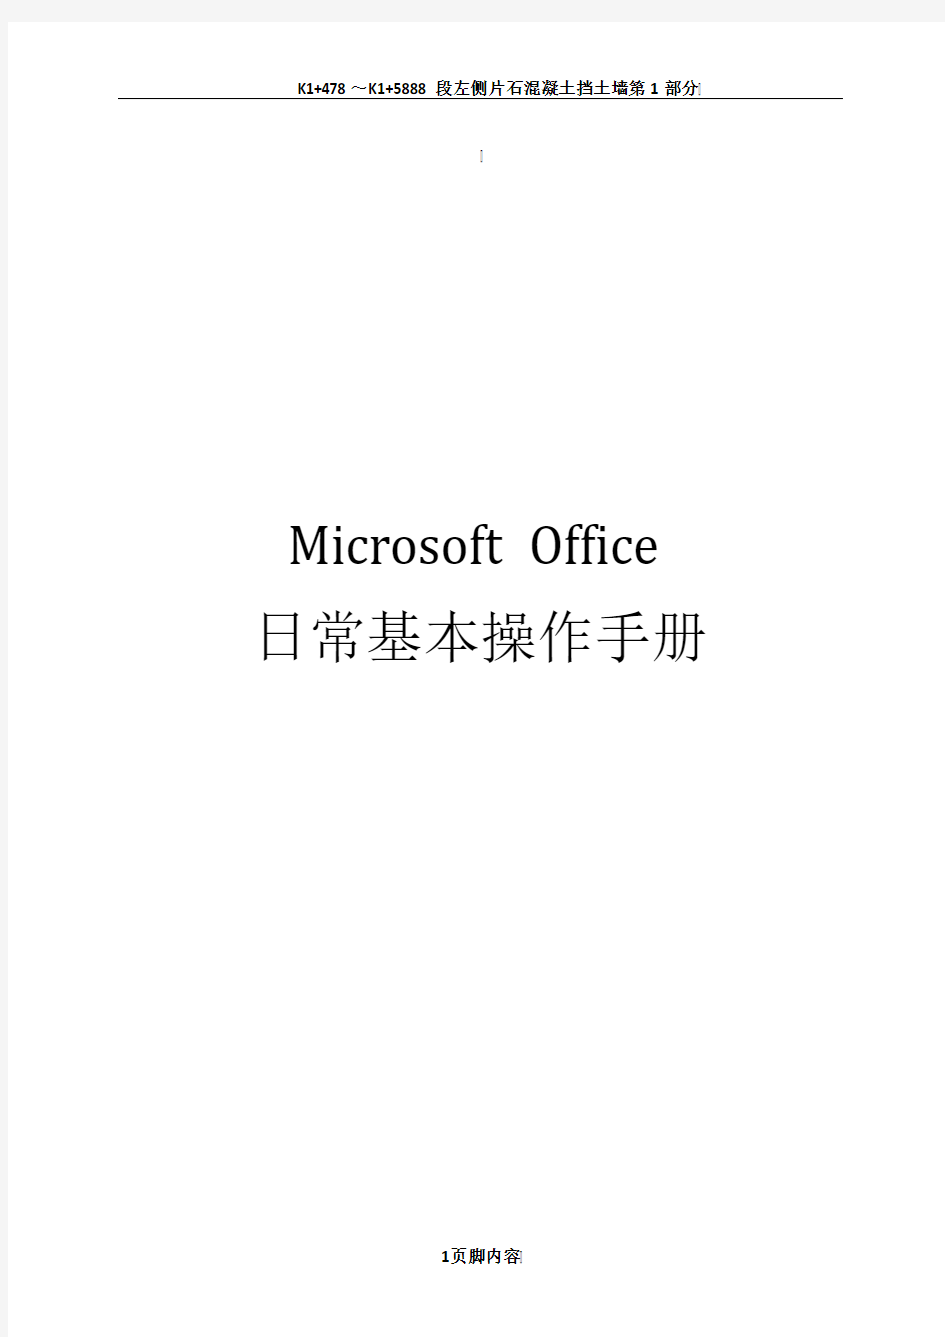 Microsoft--Office日常基本操作手册